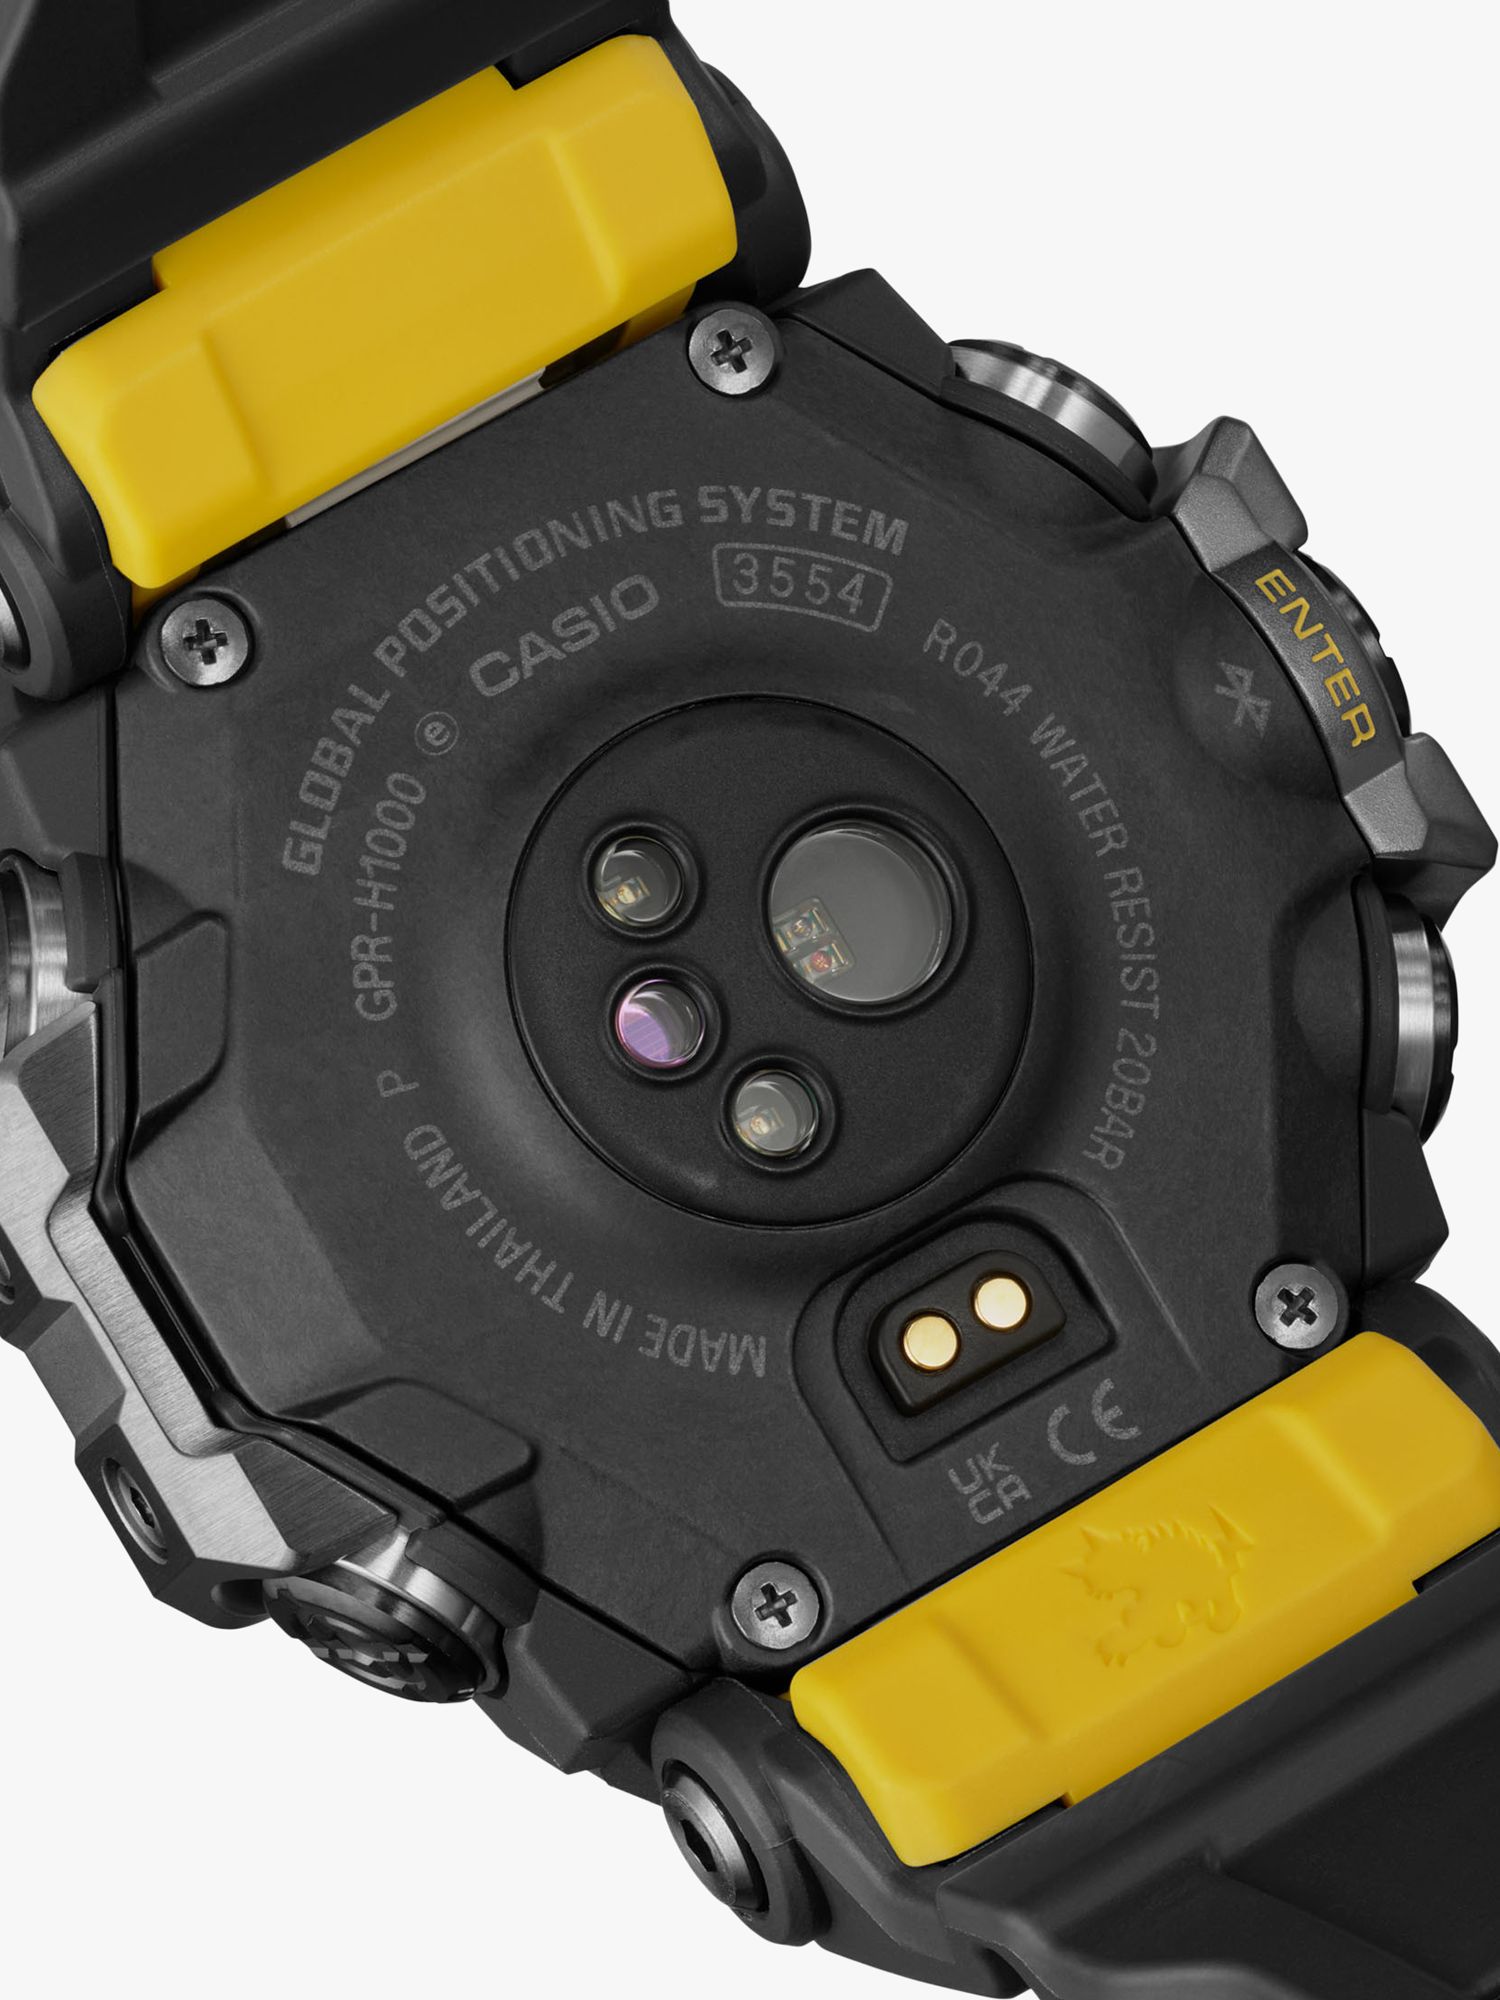 Casio Men's G-SHOCK Rangeman Solar Resin Strap Watch, Black GPR-H1000-1ER